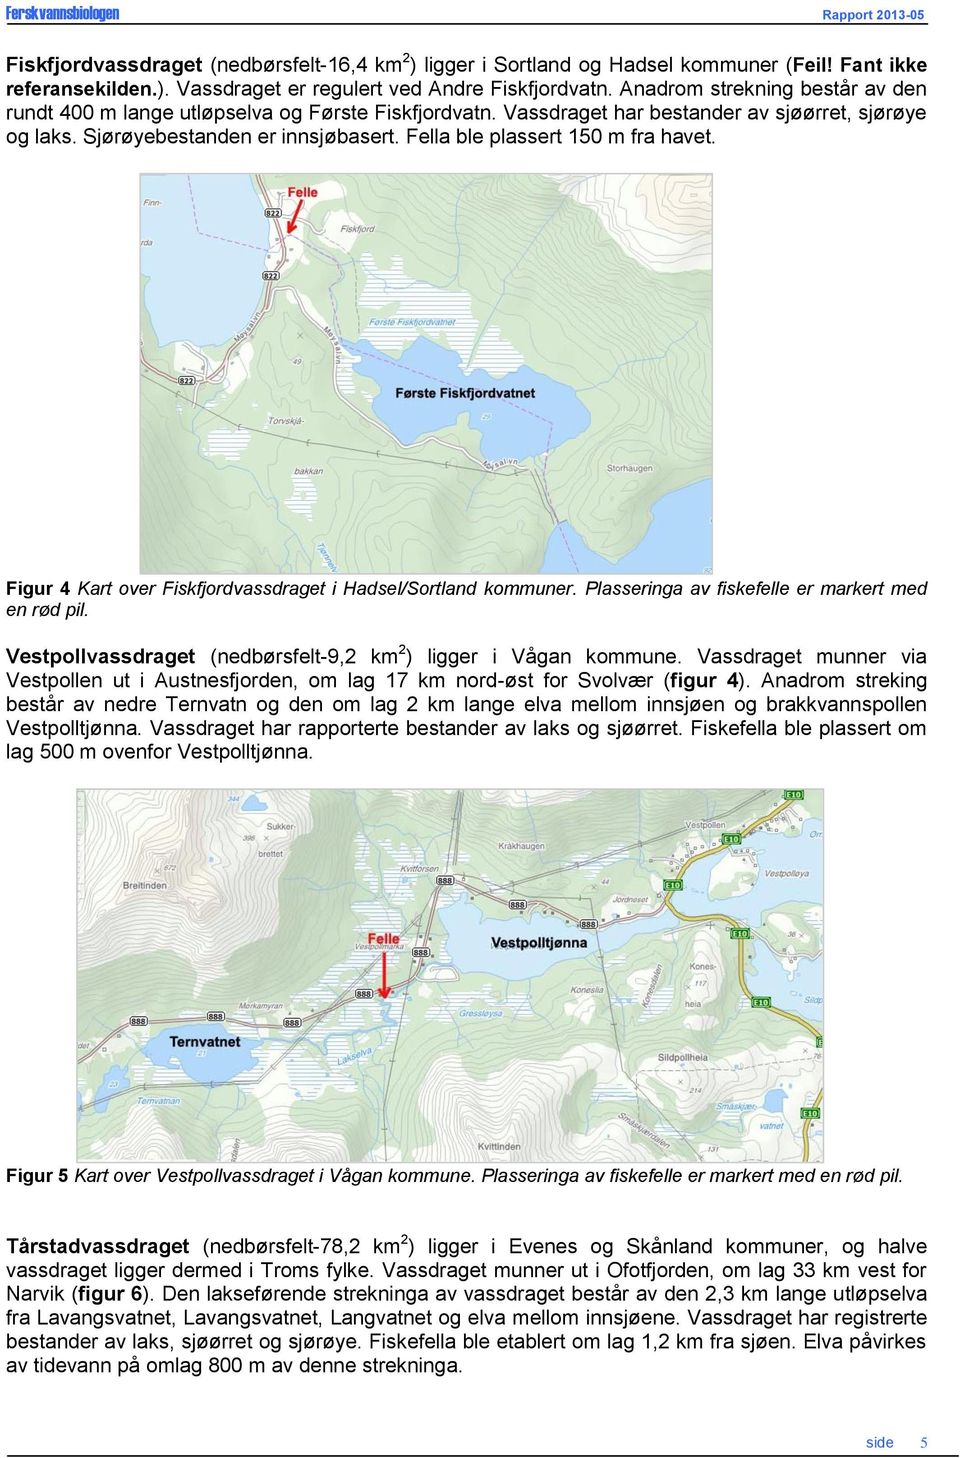 Fella ble plassert 15 m fra havet. Figur 4 Kart over Fiskfjordvassdraget i Hadsel/Sortland kommuner. Plasseringa av fiskefelle er markert med en rød pil.